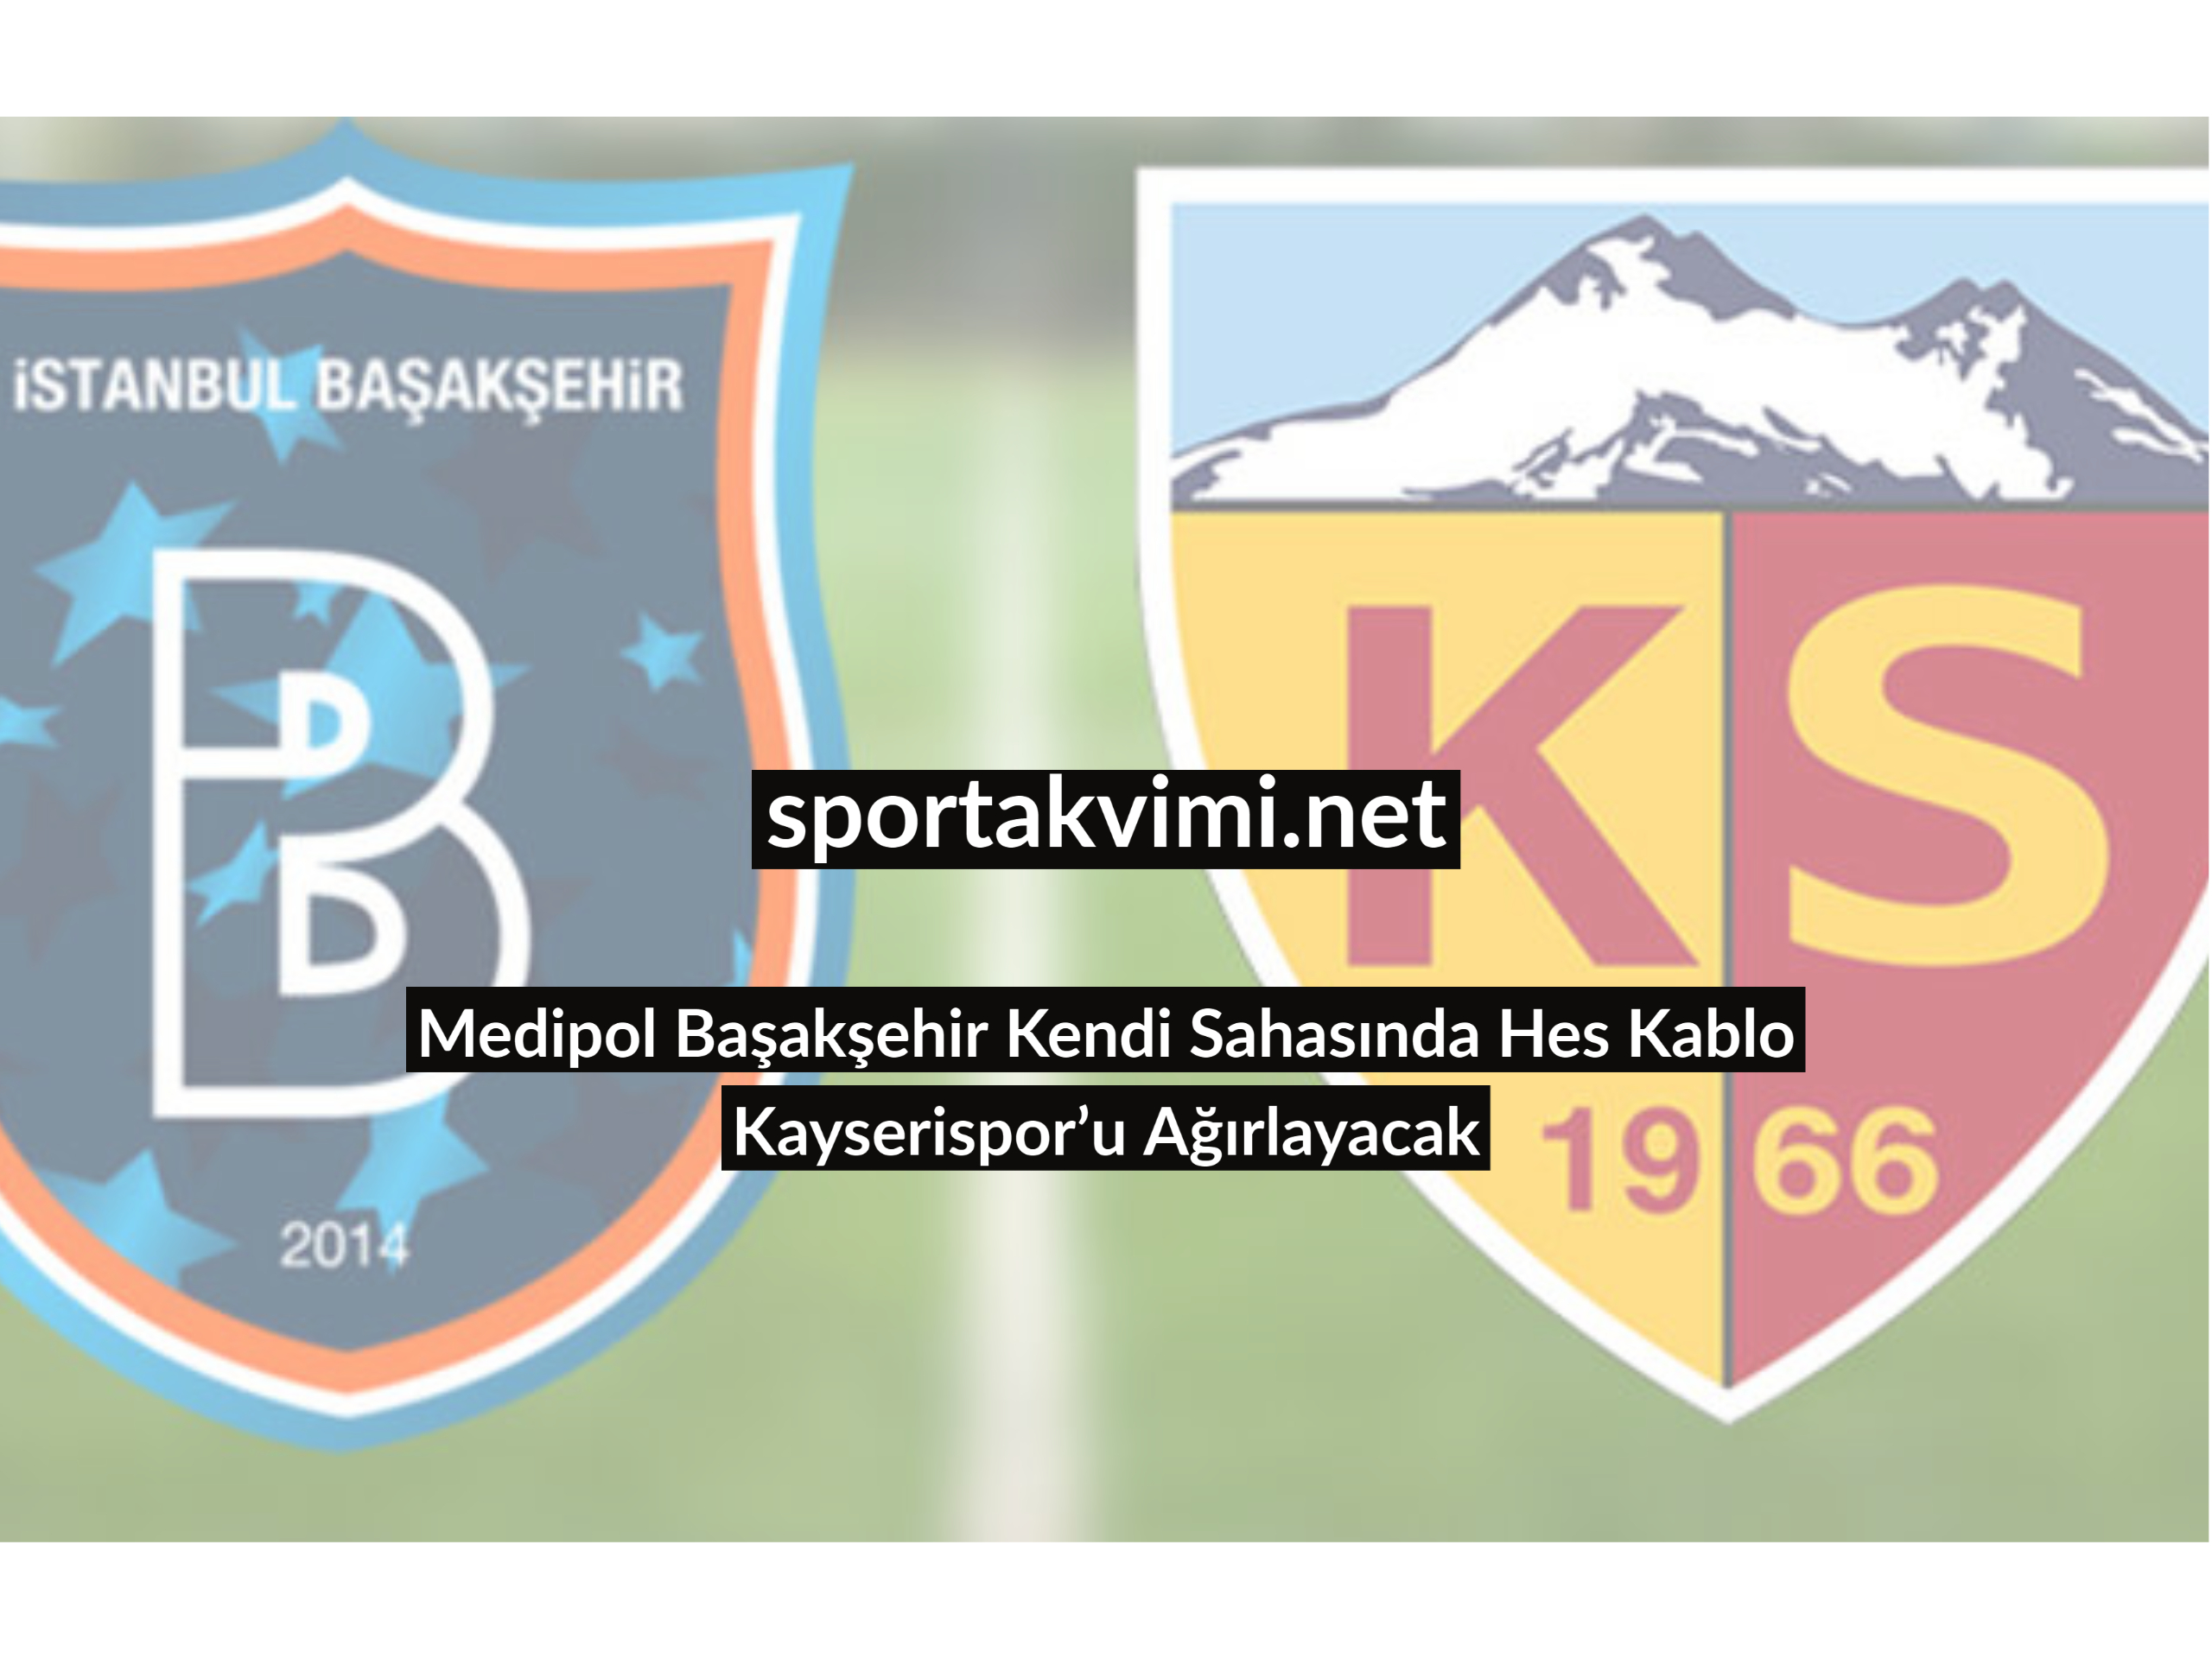 Medipol Başakşehir Kendi Sahasında Hes Kablo Kayserispor’u Ağırlayacak